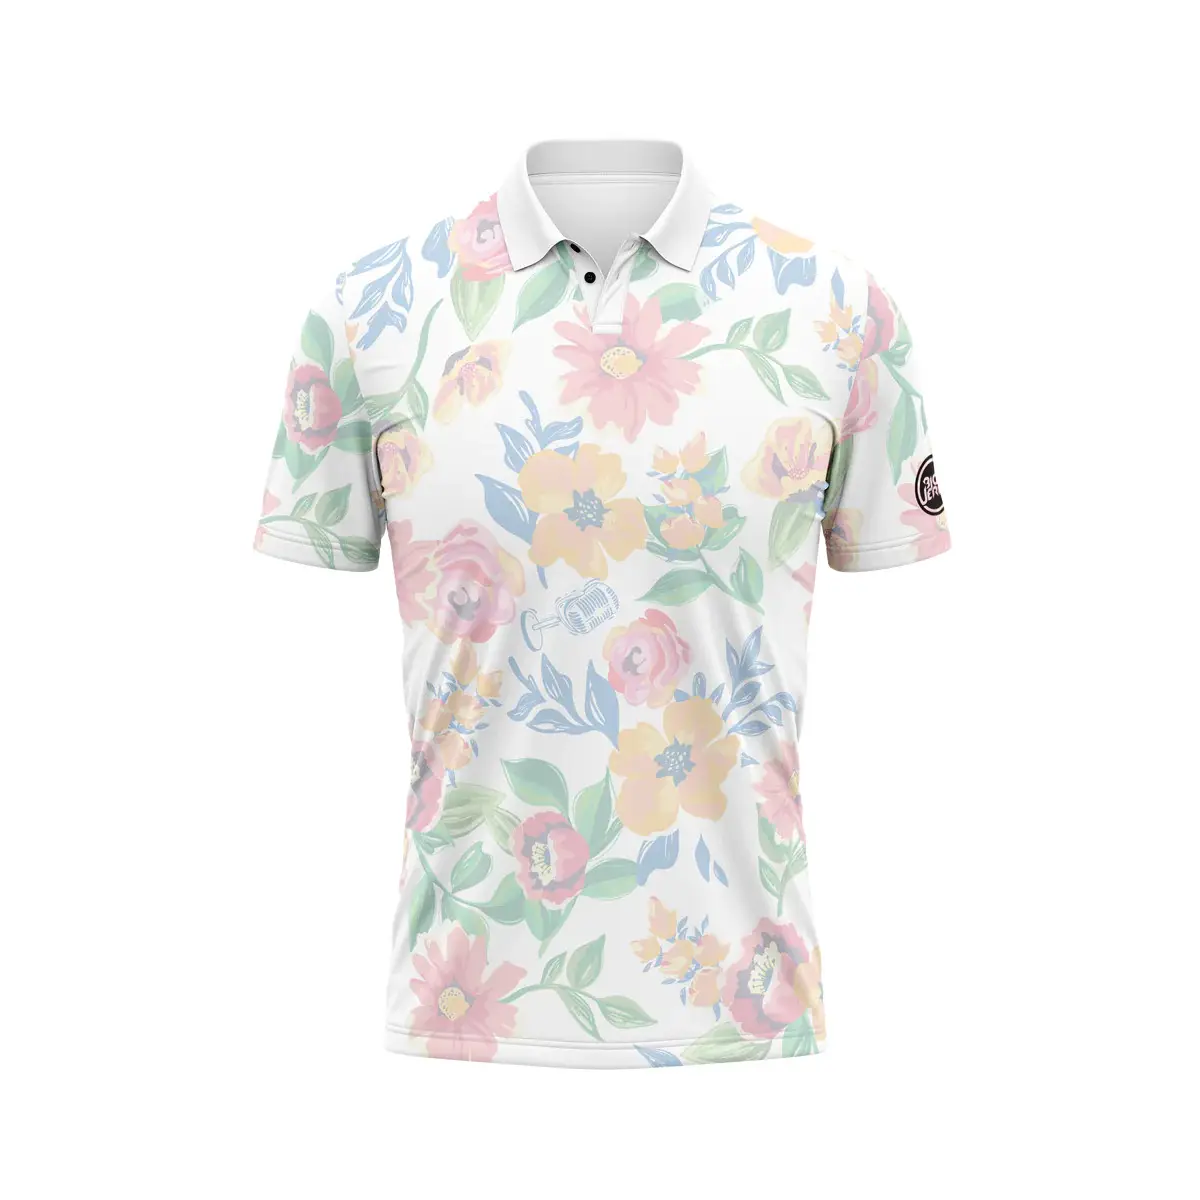 Camiseta esportiva de poliéster Spandex para homens, camisa polo de golfe de secagem rápida com logotipo bordado por sublimação, modalidade esportiva para golfe por atacado